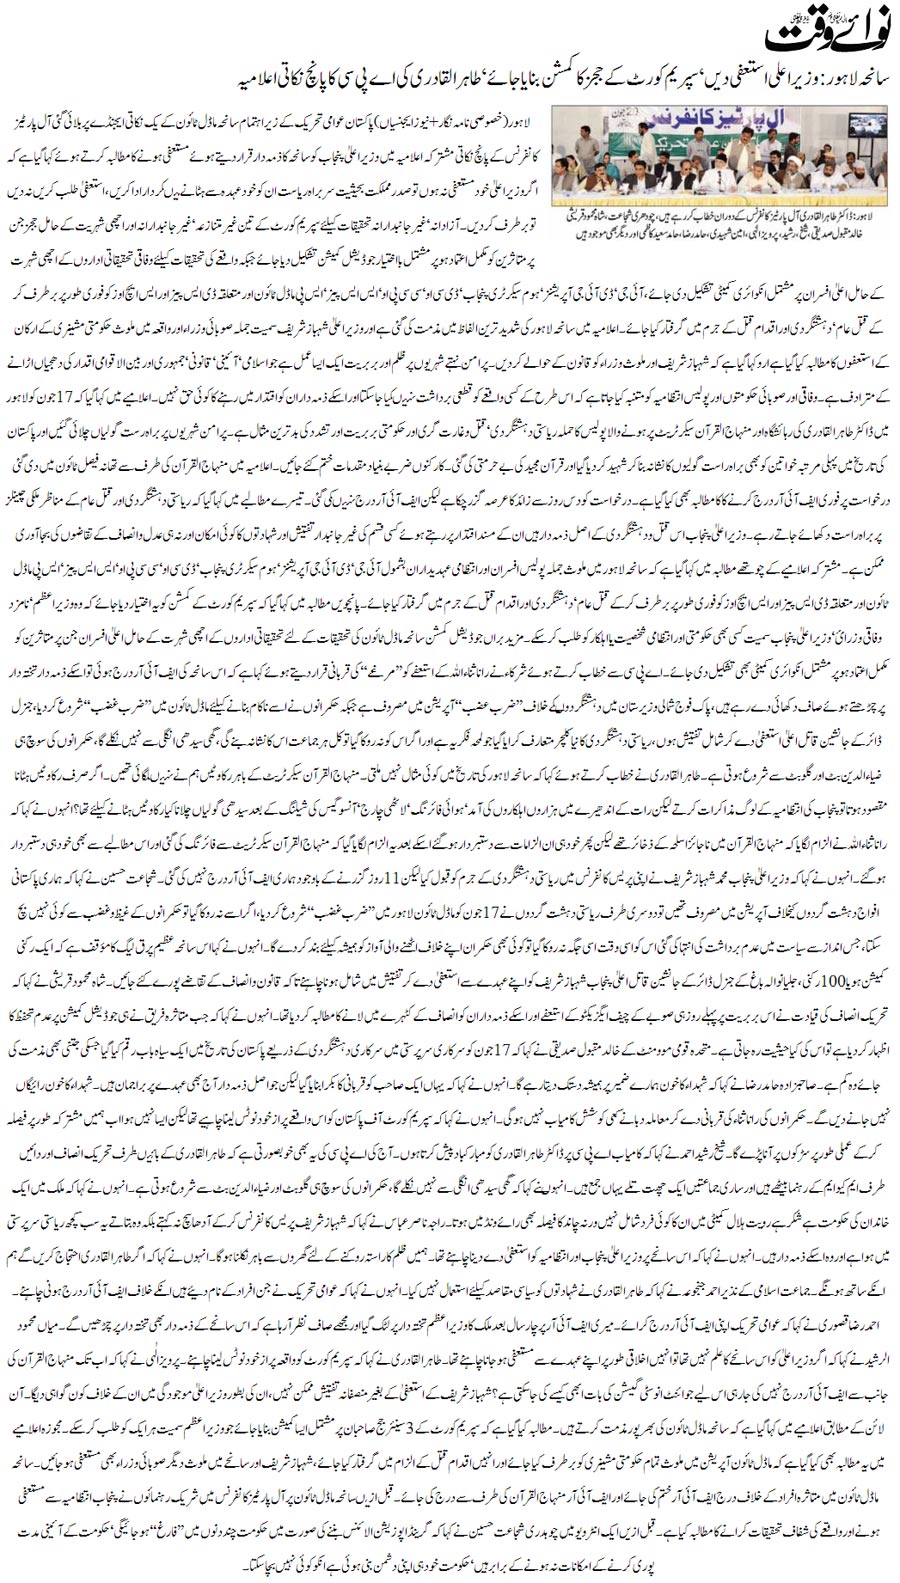 Minhaj-ul-Quran  Print Media Coverage Daily Nawa-i-Waqat Front Page